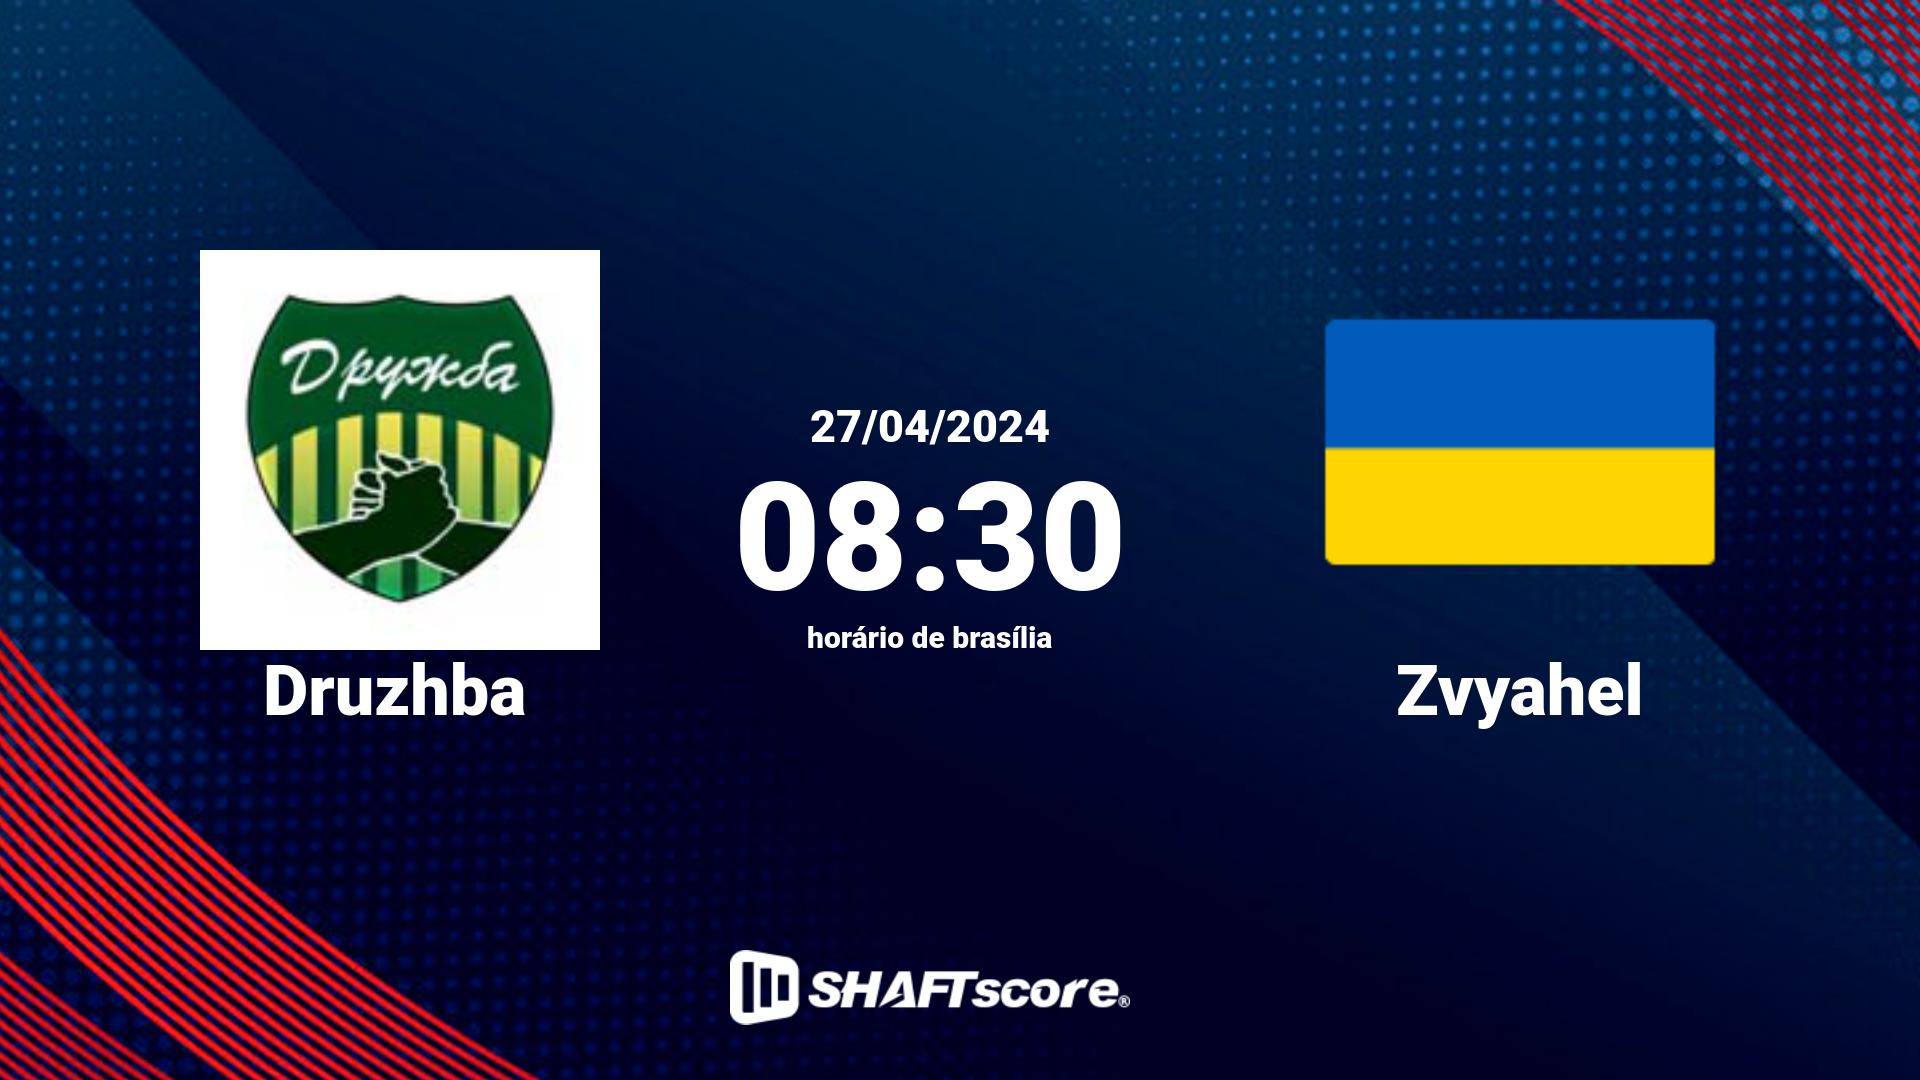 Estatísticas do jogo Druzhba vs Zvyahel 27.04 08:30